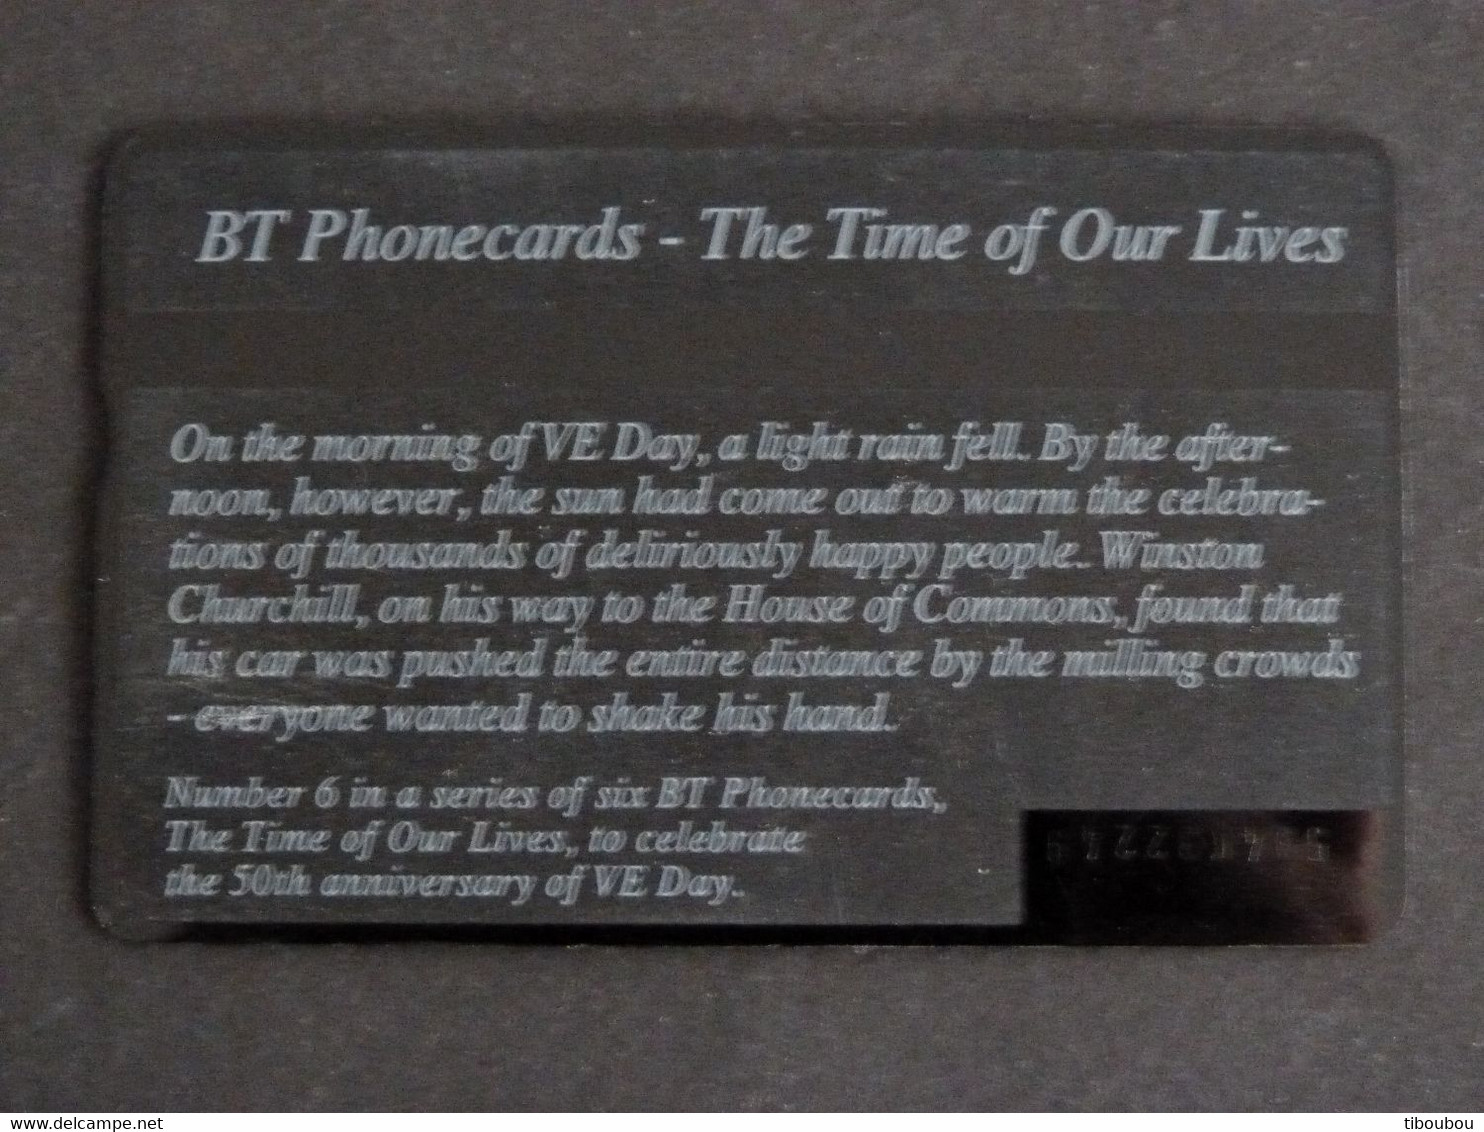 TELECARTE BRITISH TELECOM PHONECARD 20 UNITS - VE DAY THE TIME OF OUR LIVES - BT Edición Conmemorativa